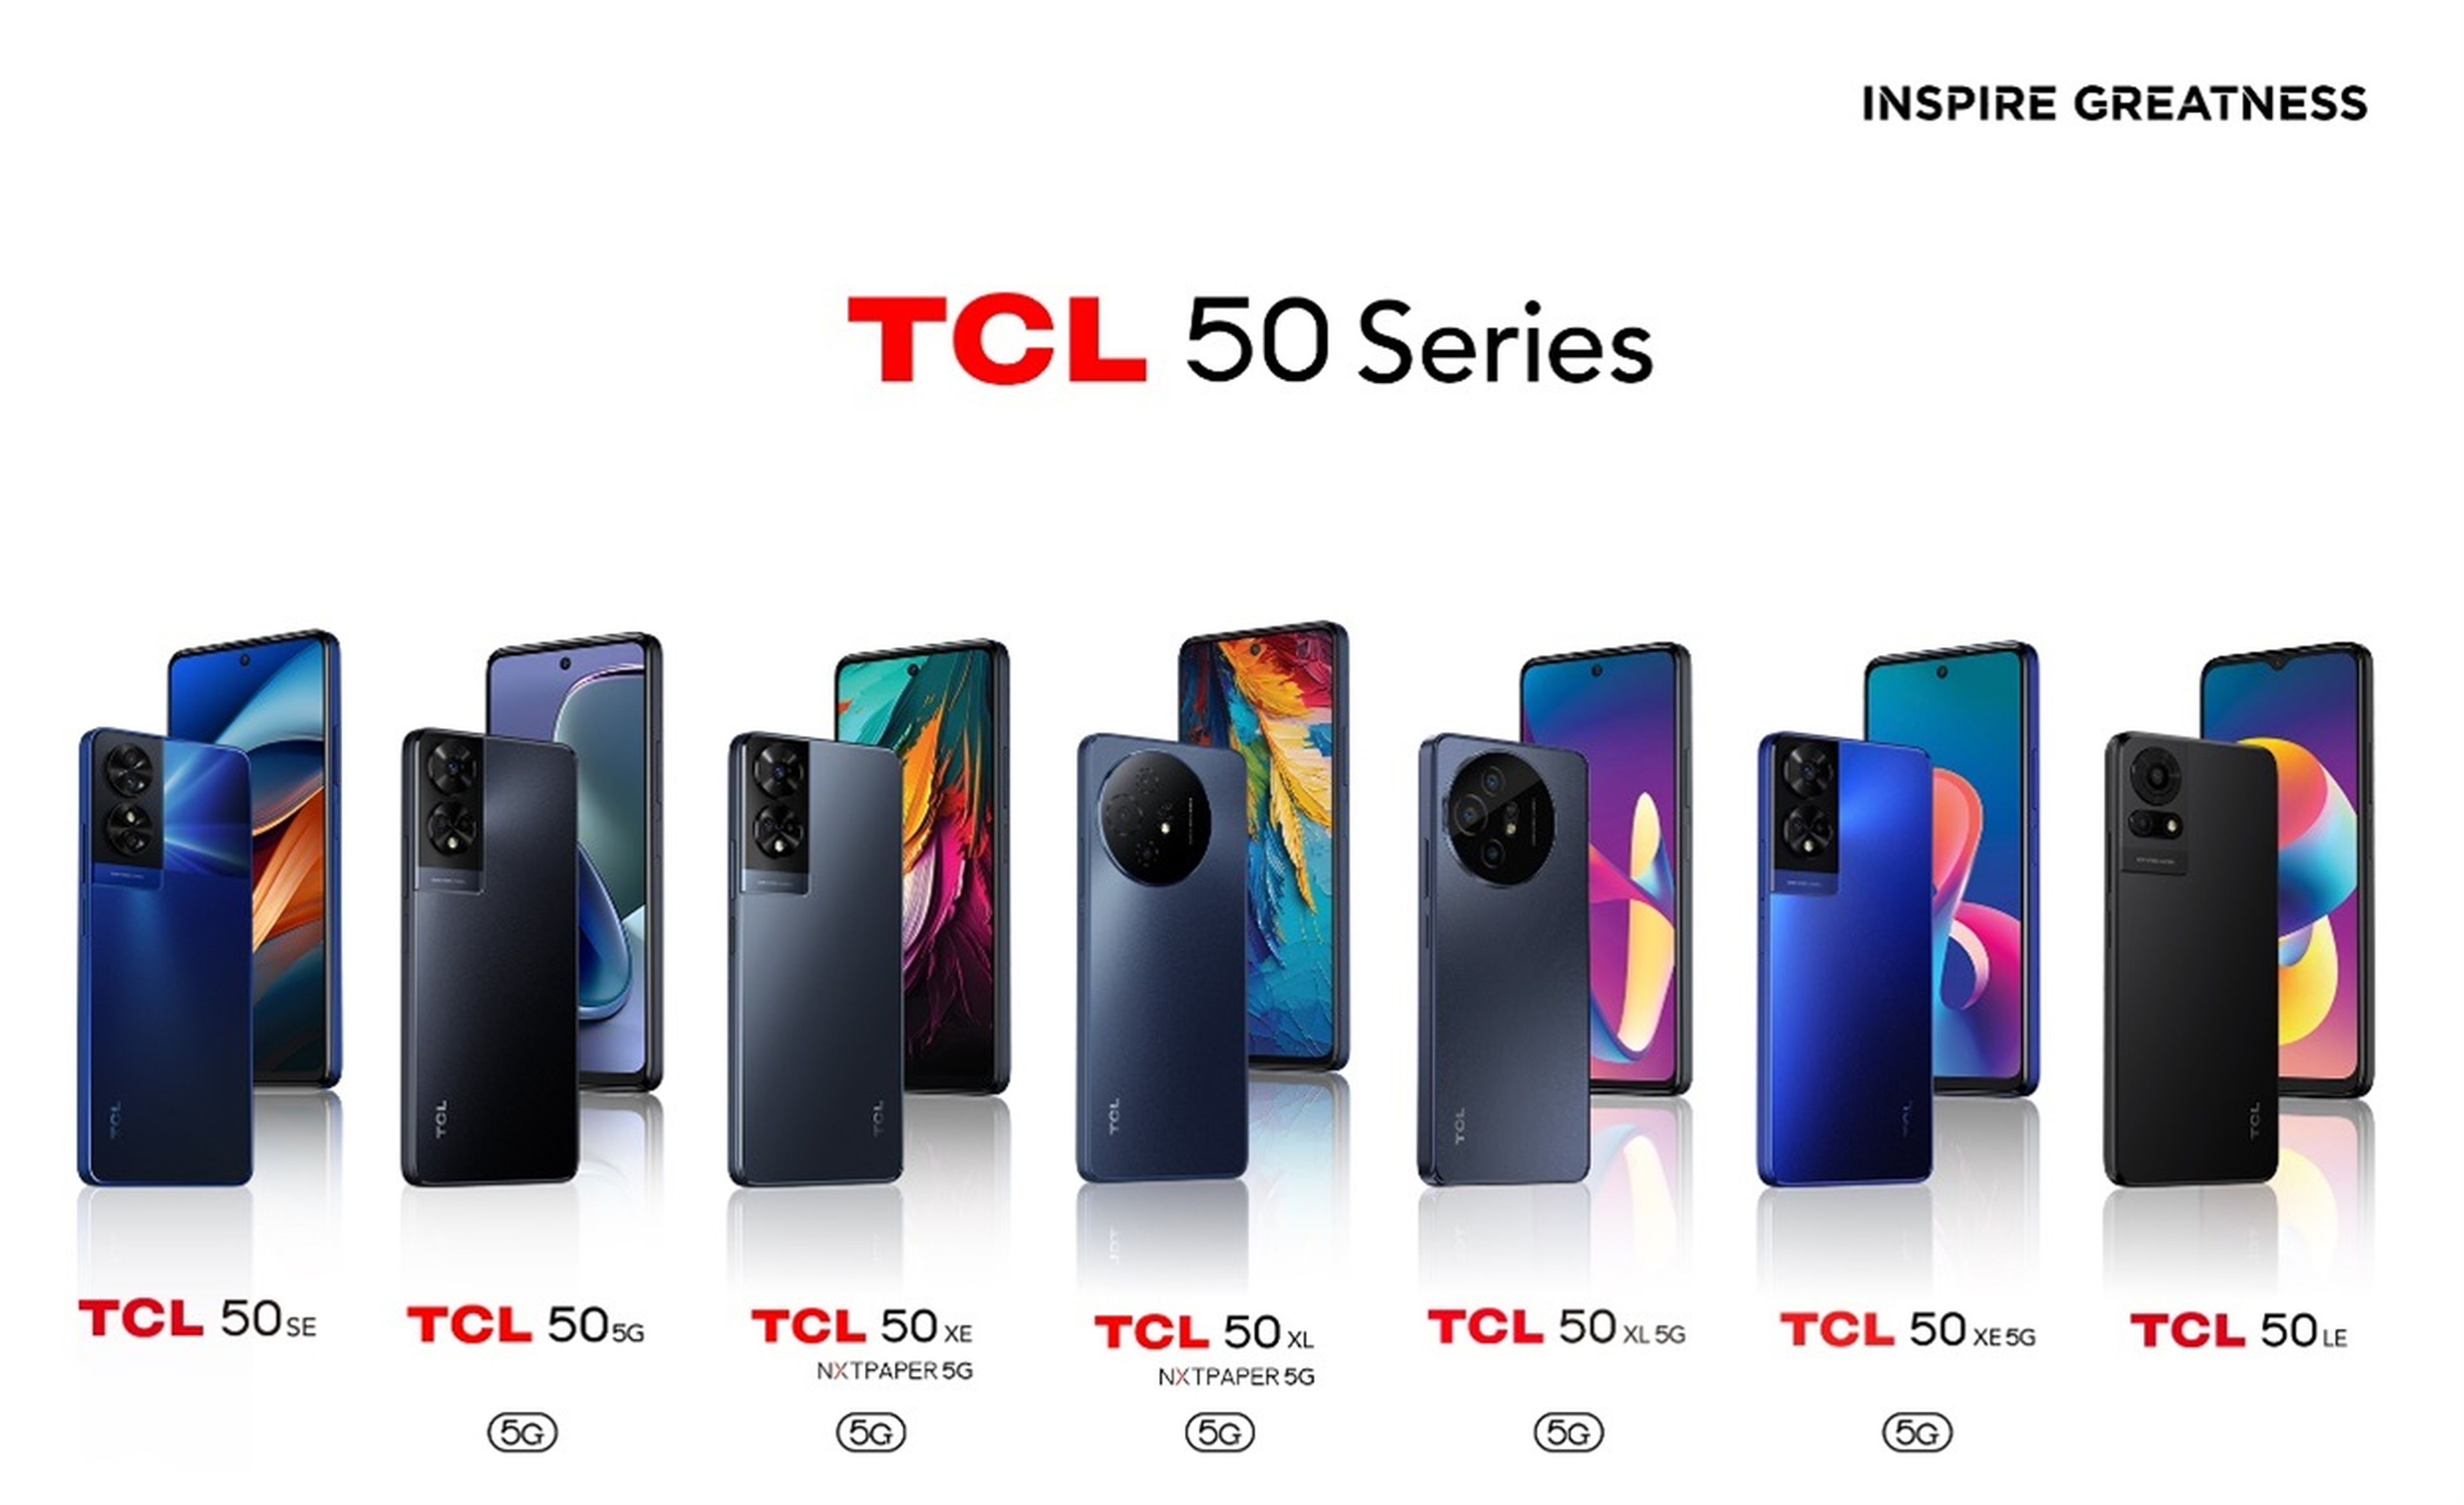 Serie TCL 50 de smartphones